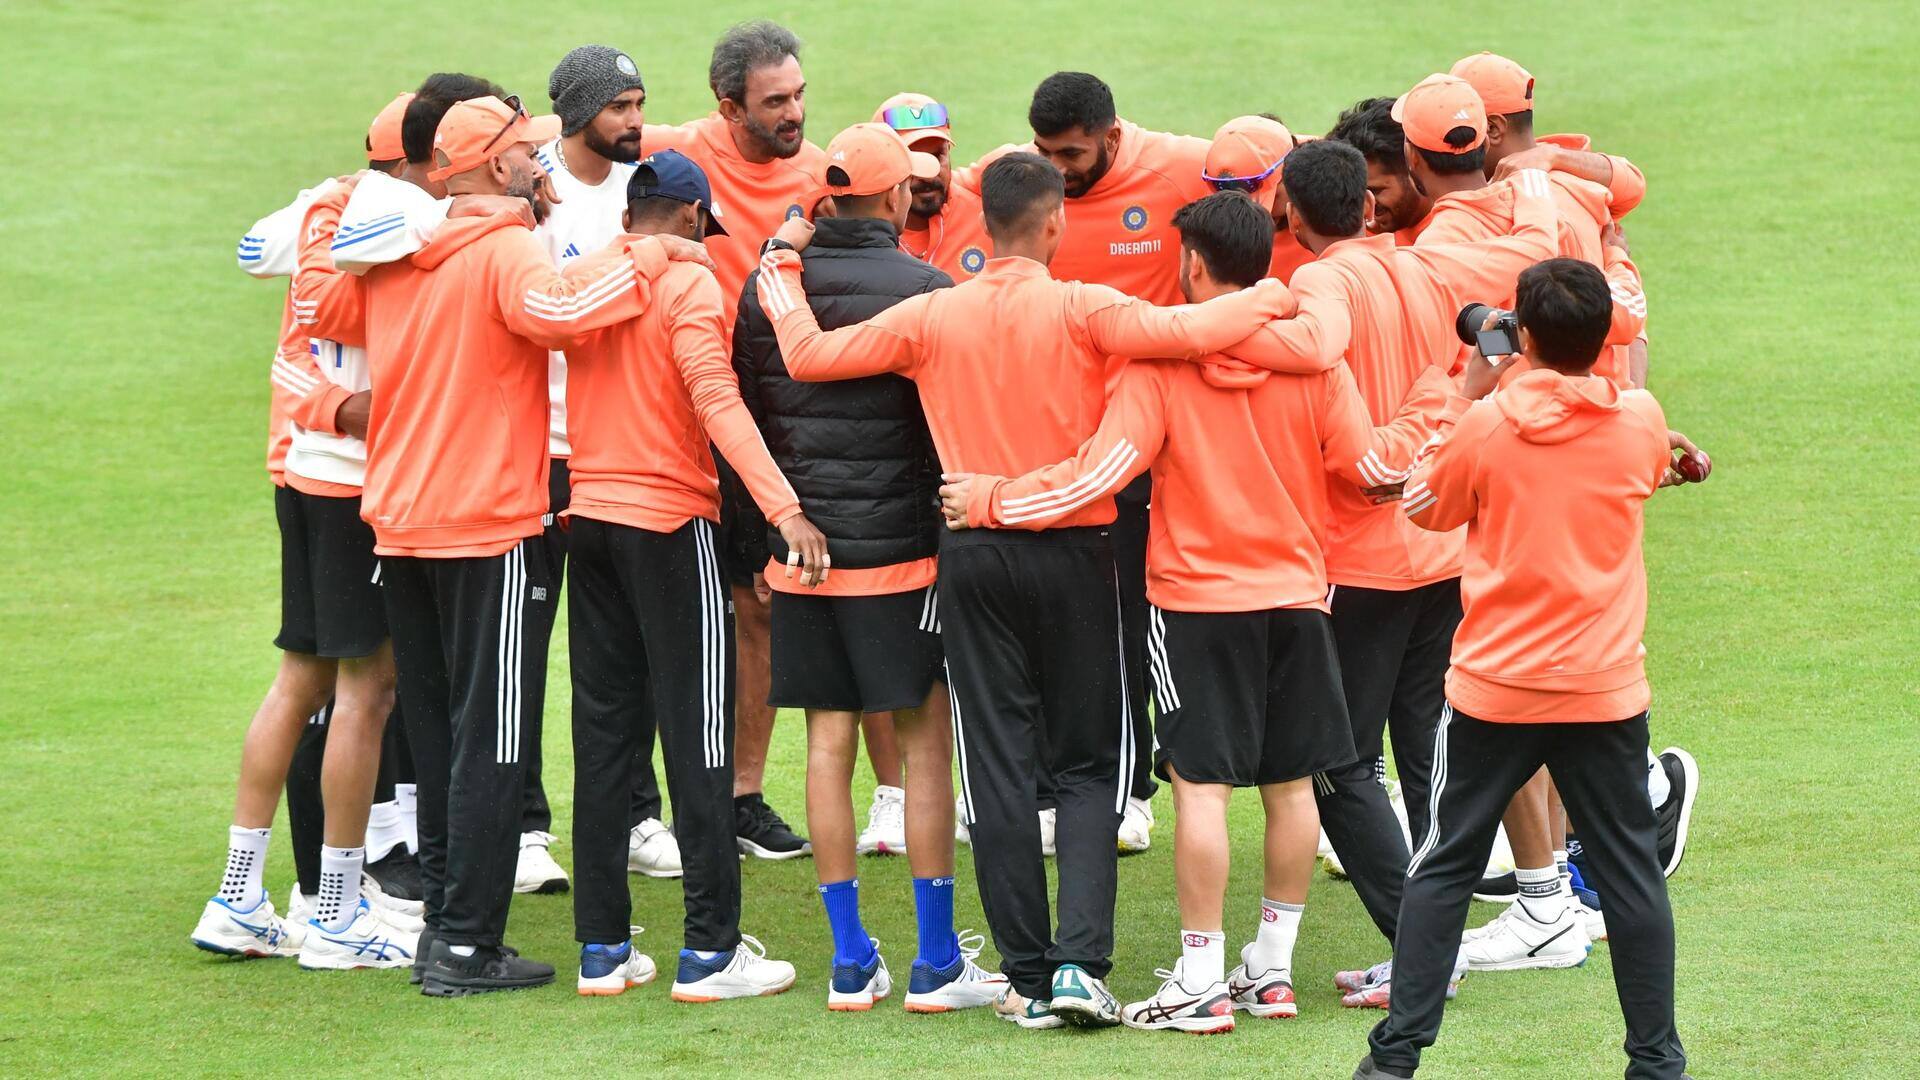 भारतीय टीम ने वैकल्पिक अभ्यास सत्र में लिया हिस्सा, केप टाउन में खेला जाएगा दूसरा टेस्ट